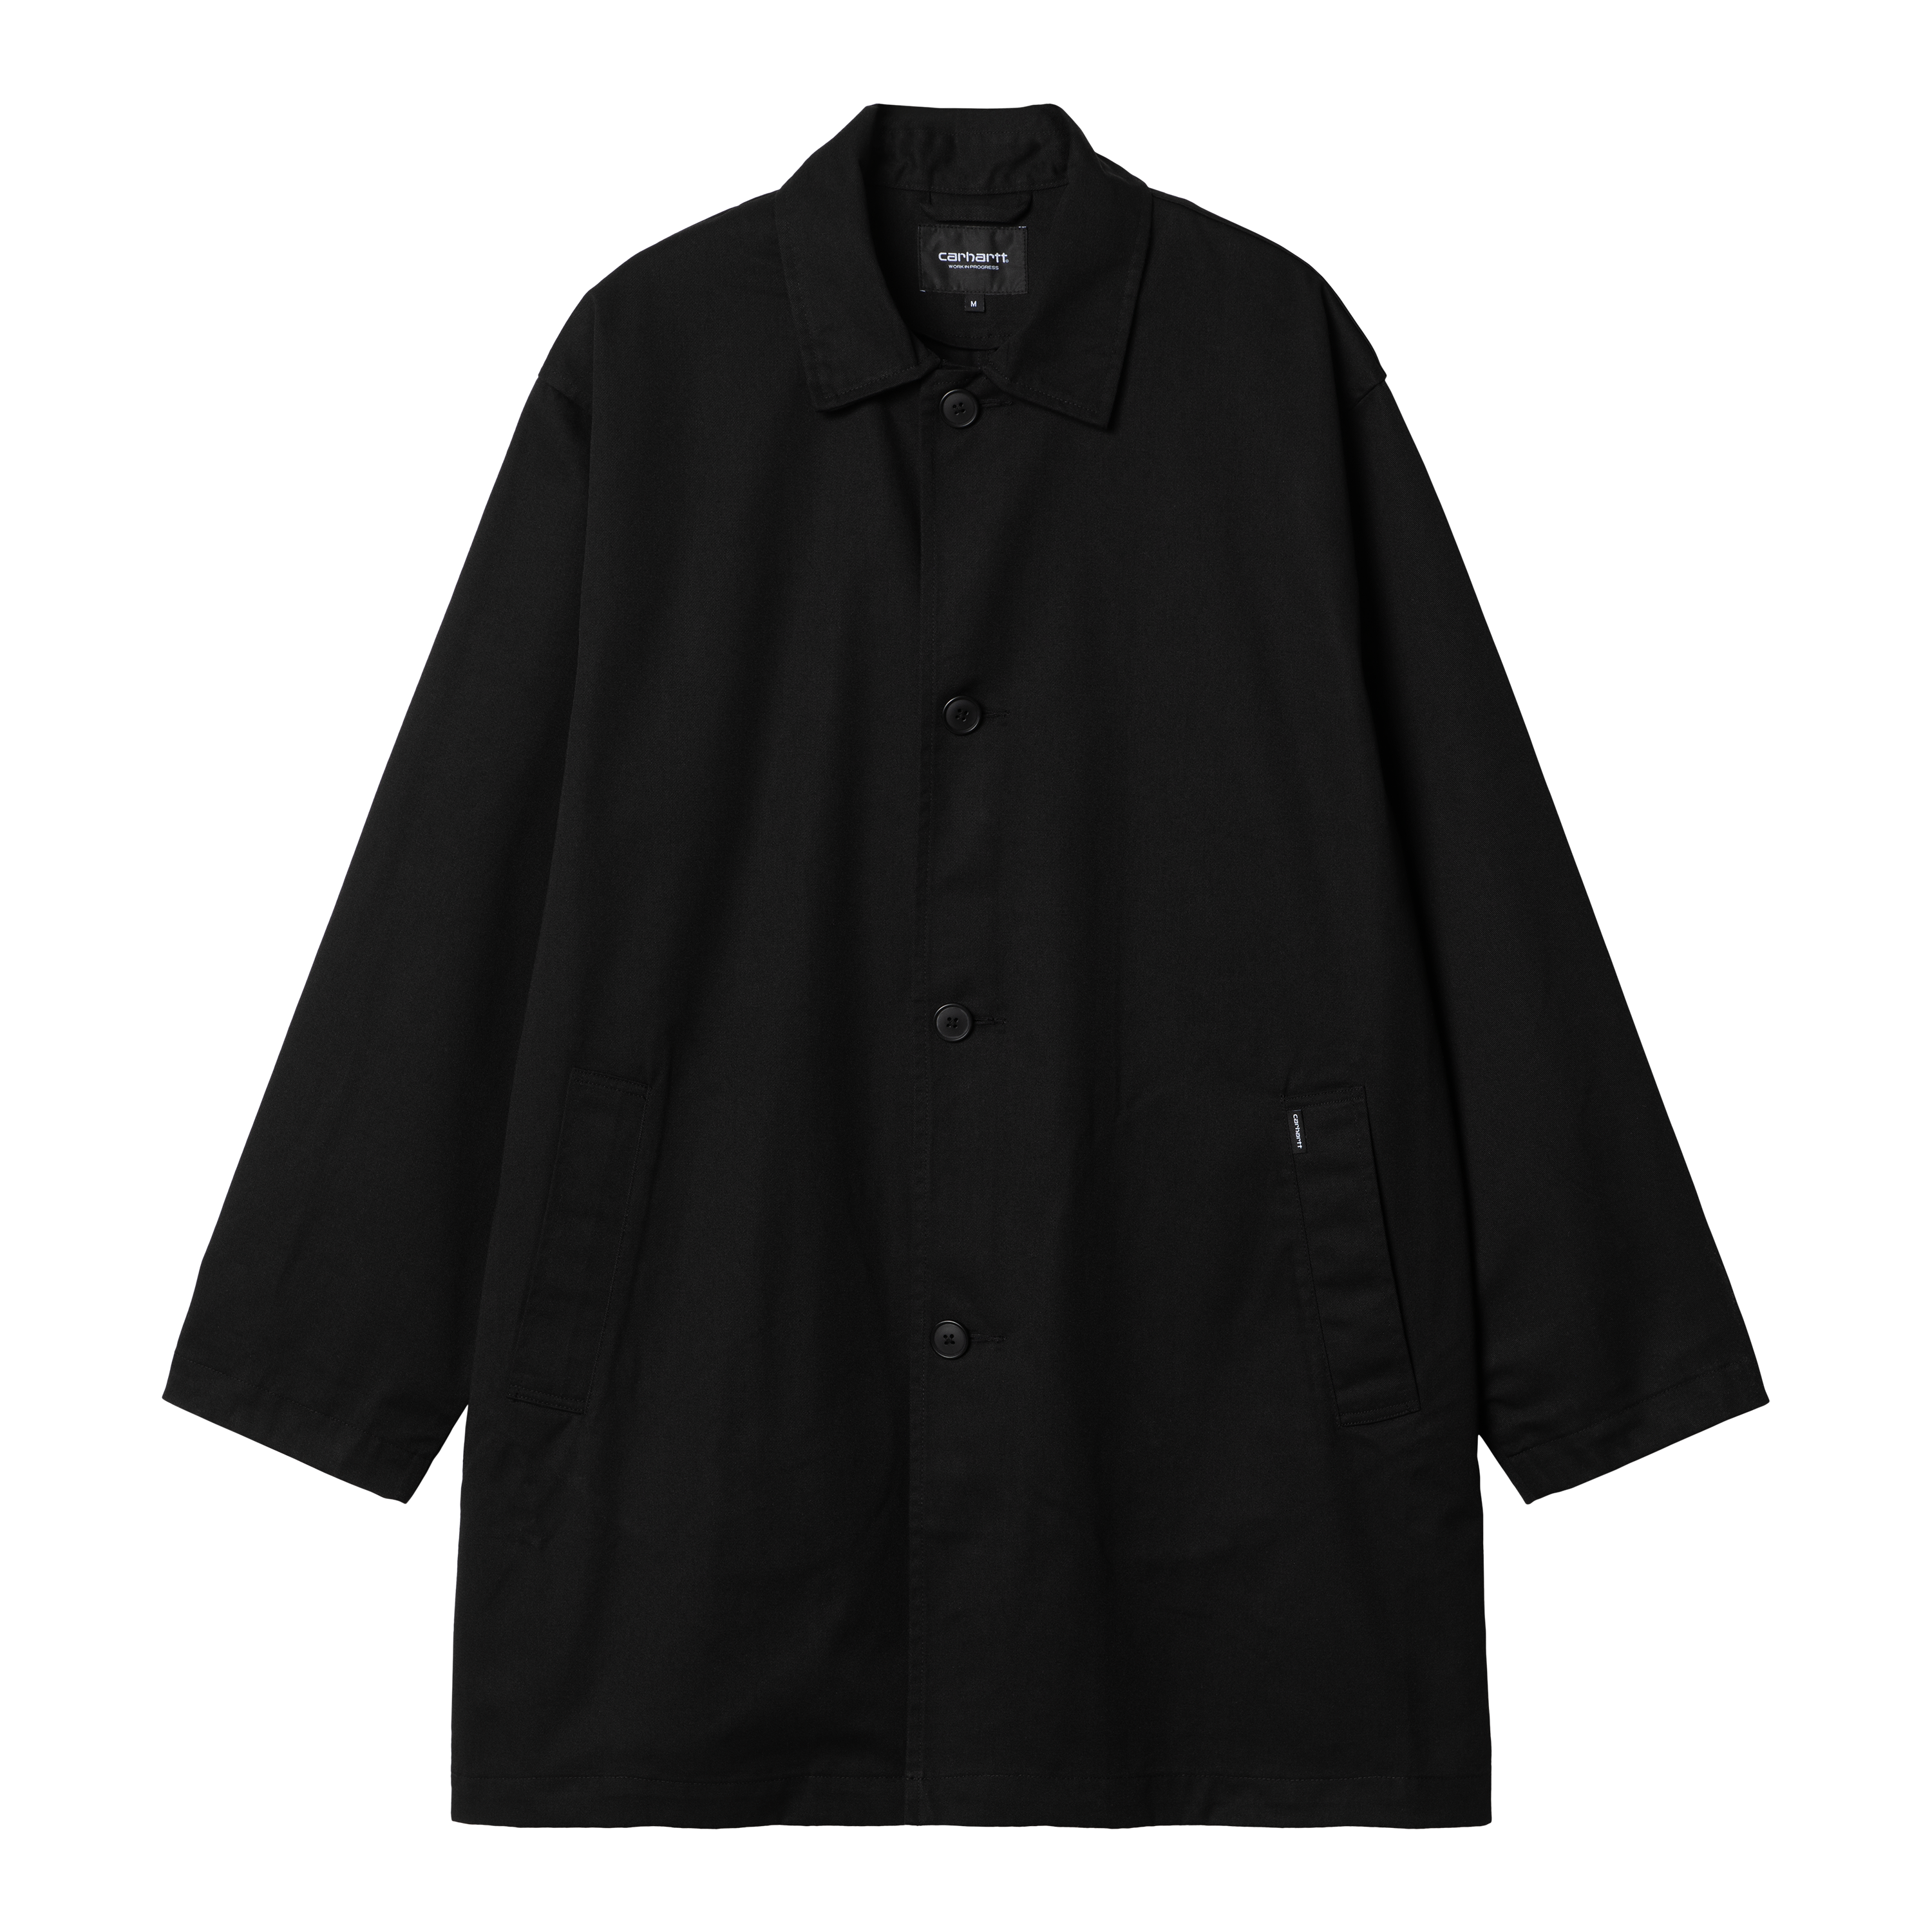 Carhartt WIP Newhaven Coat in Black